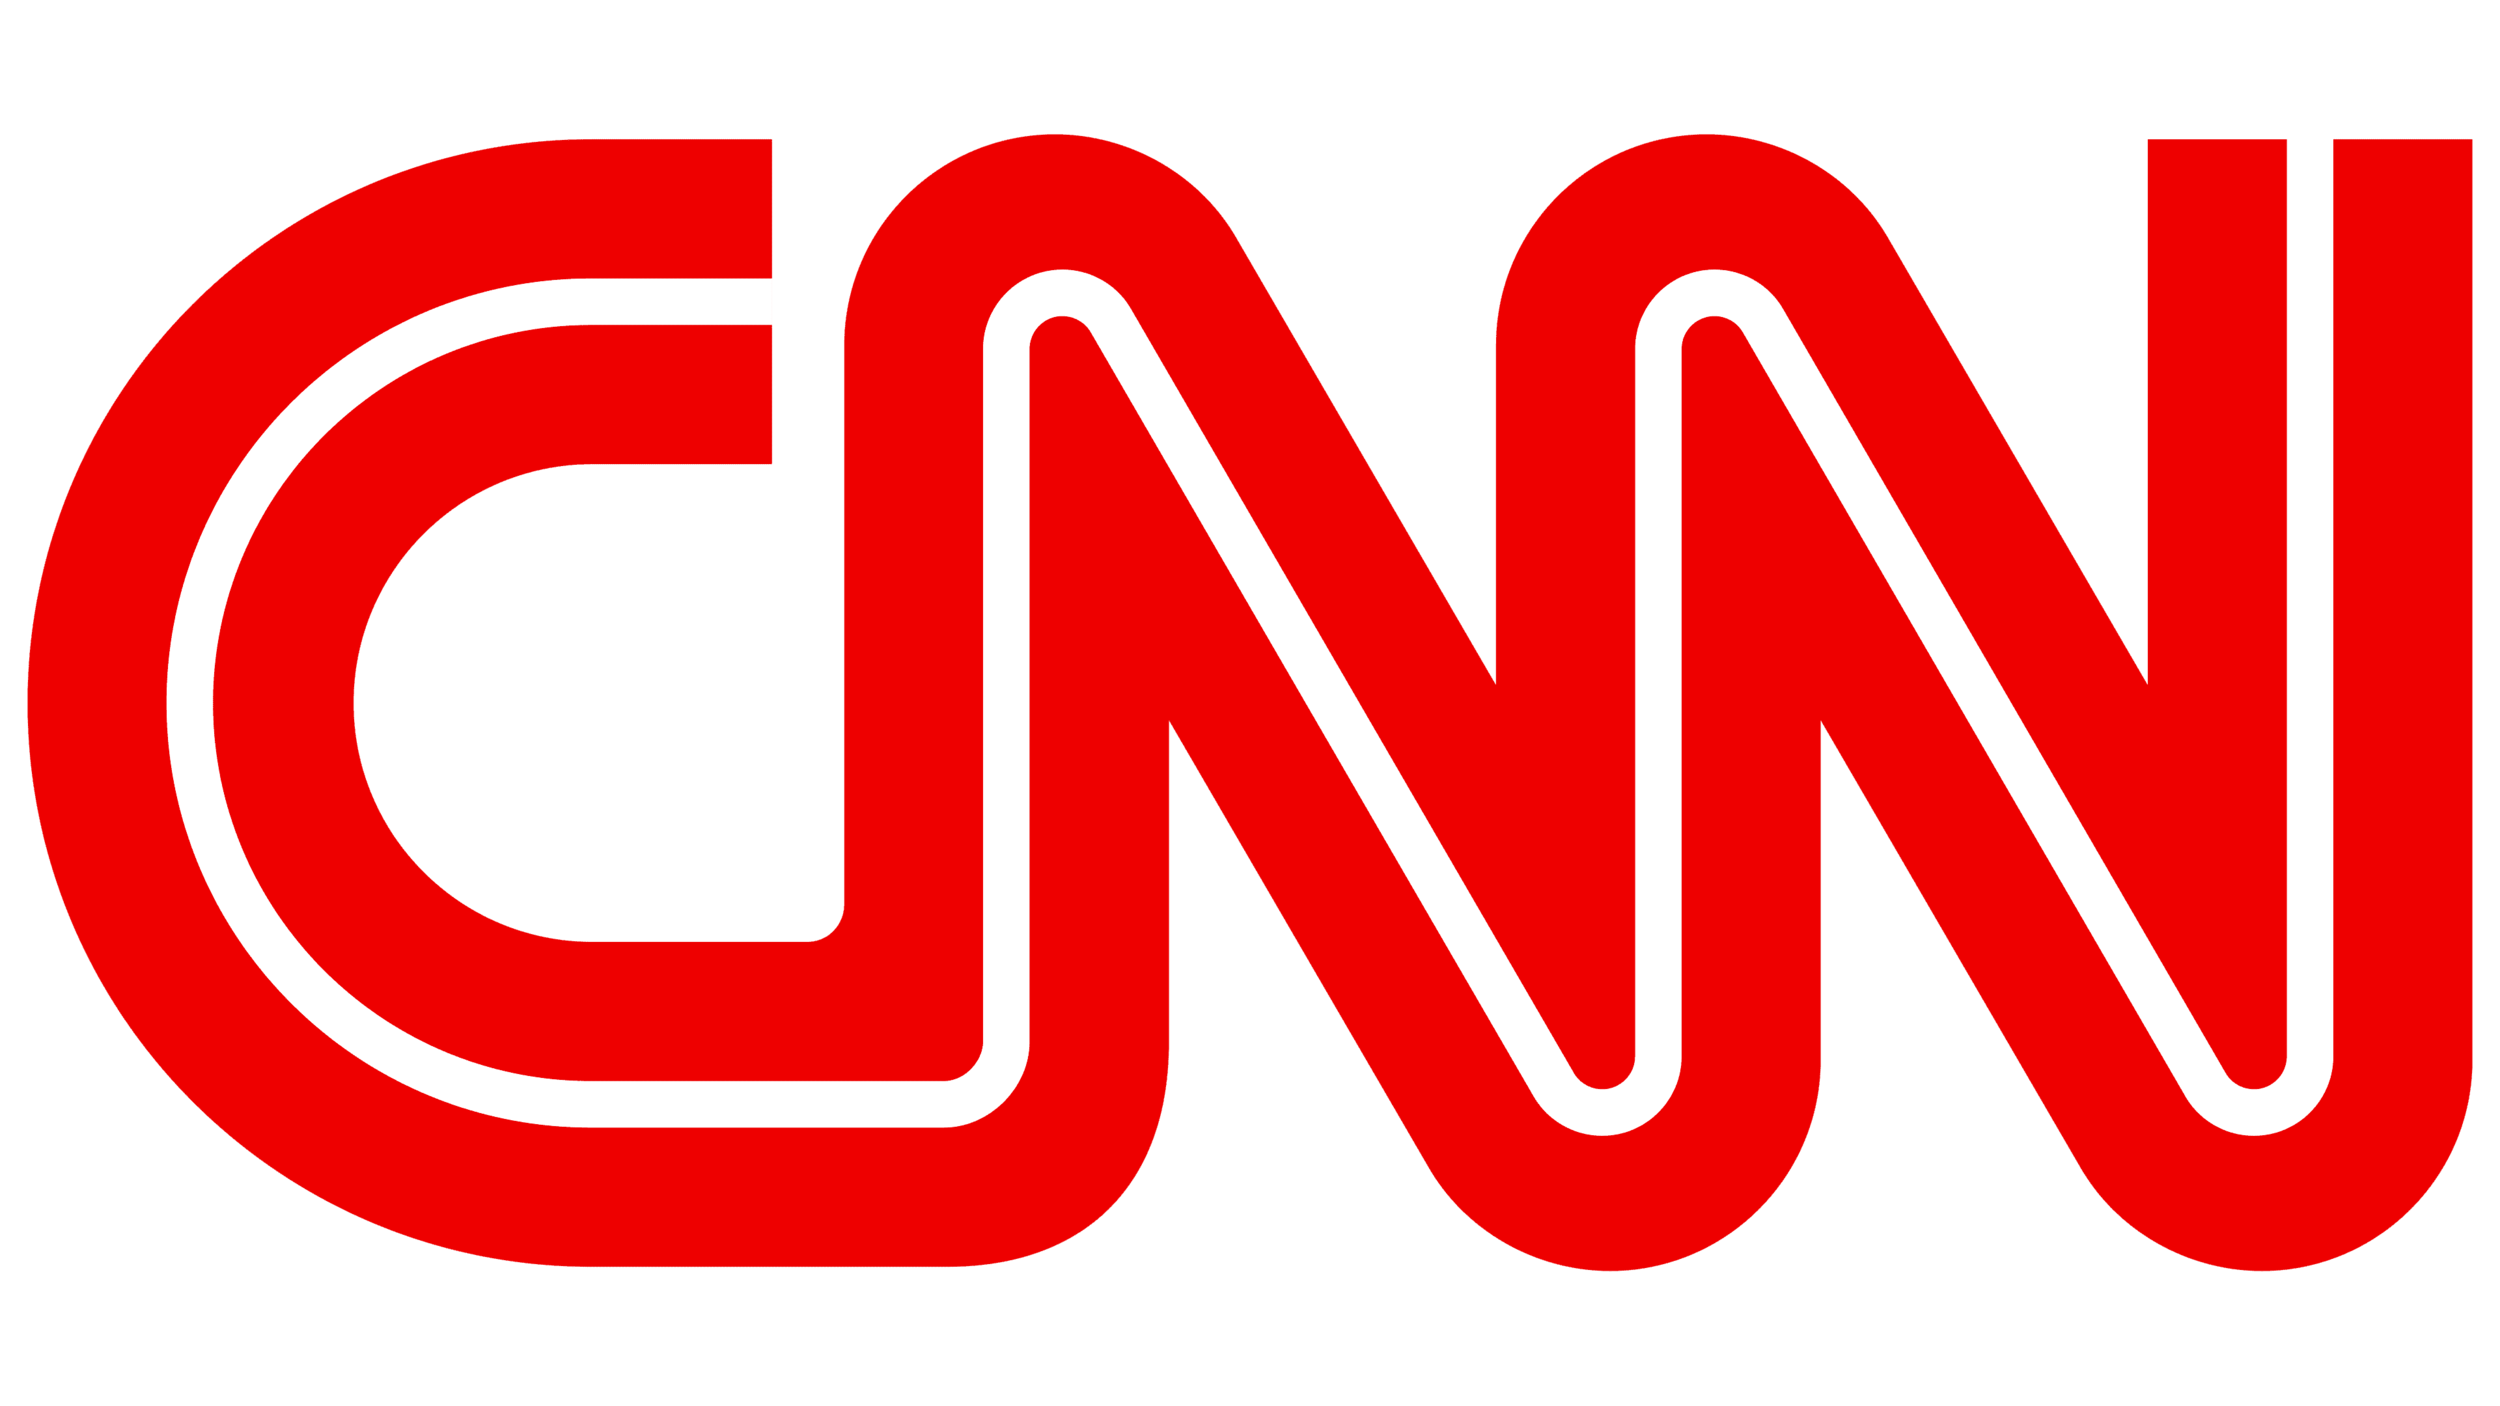 CNN-logo.png